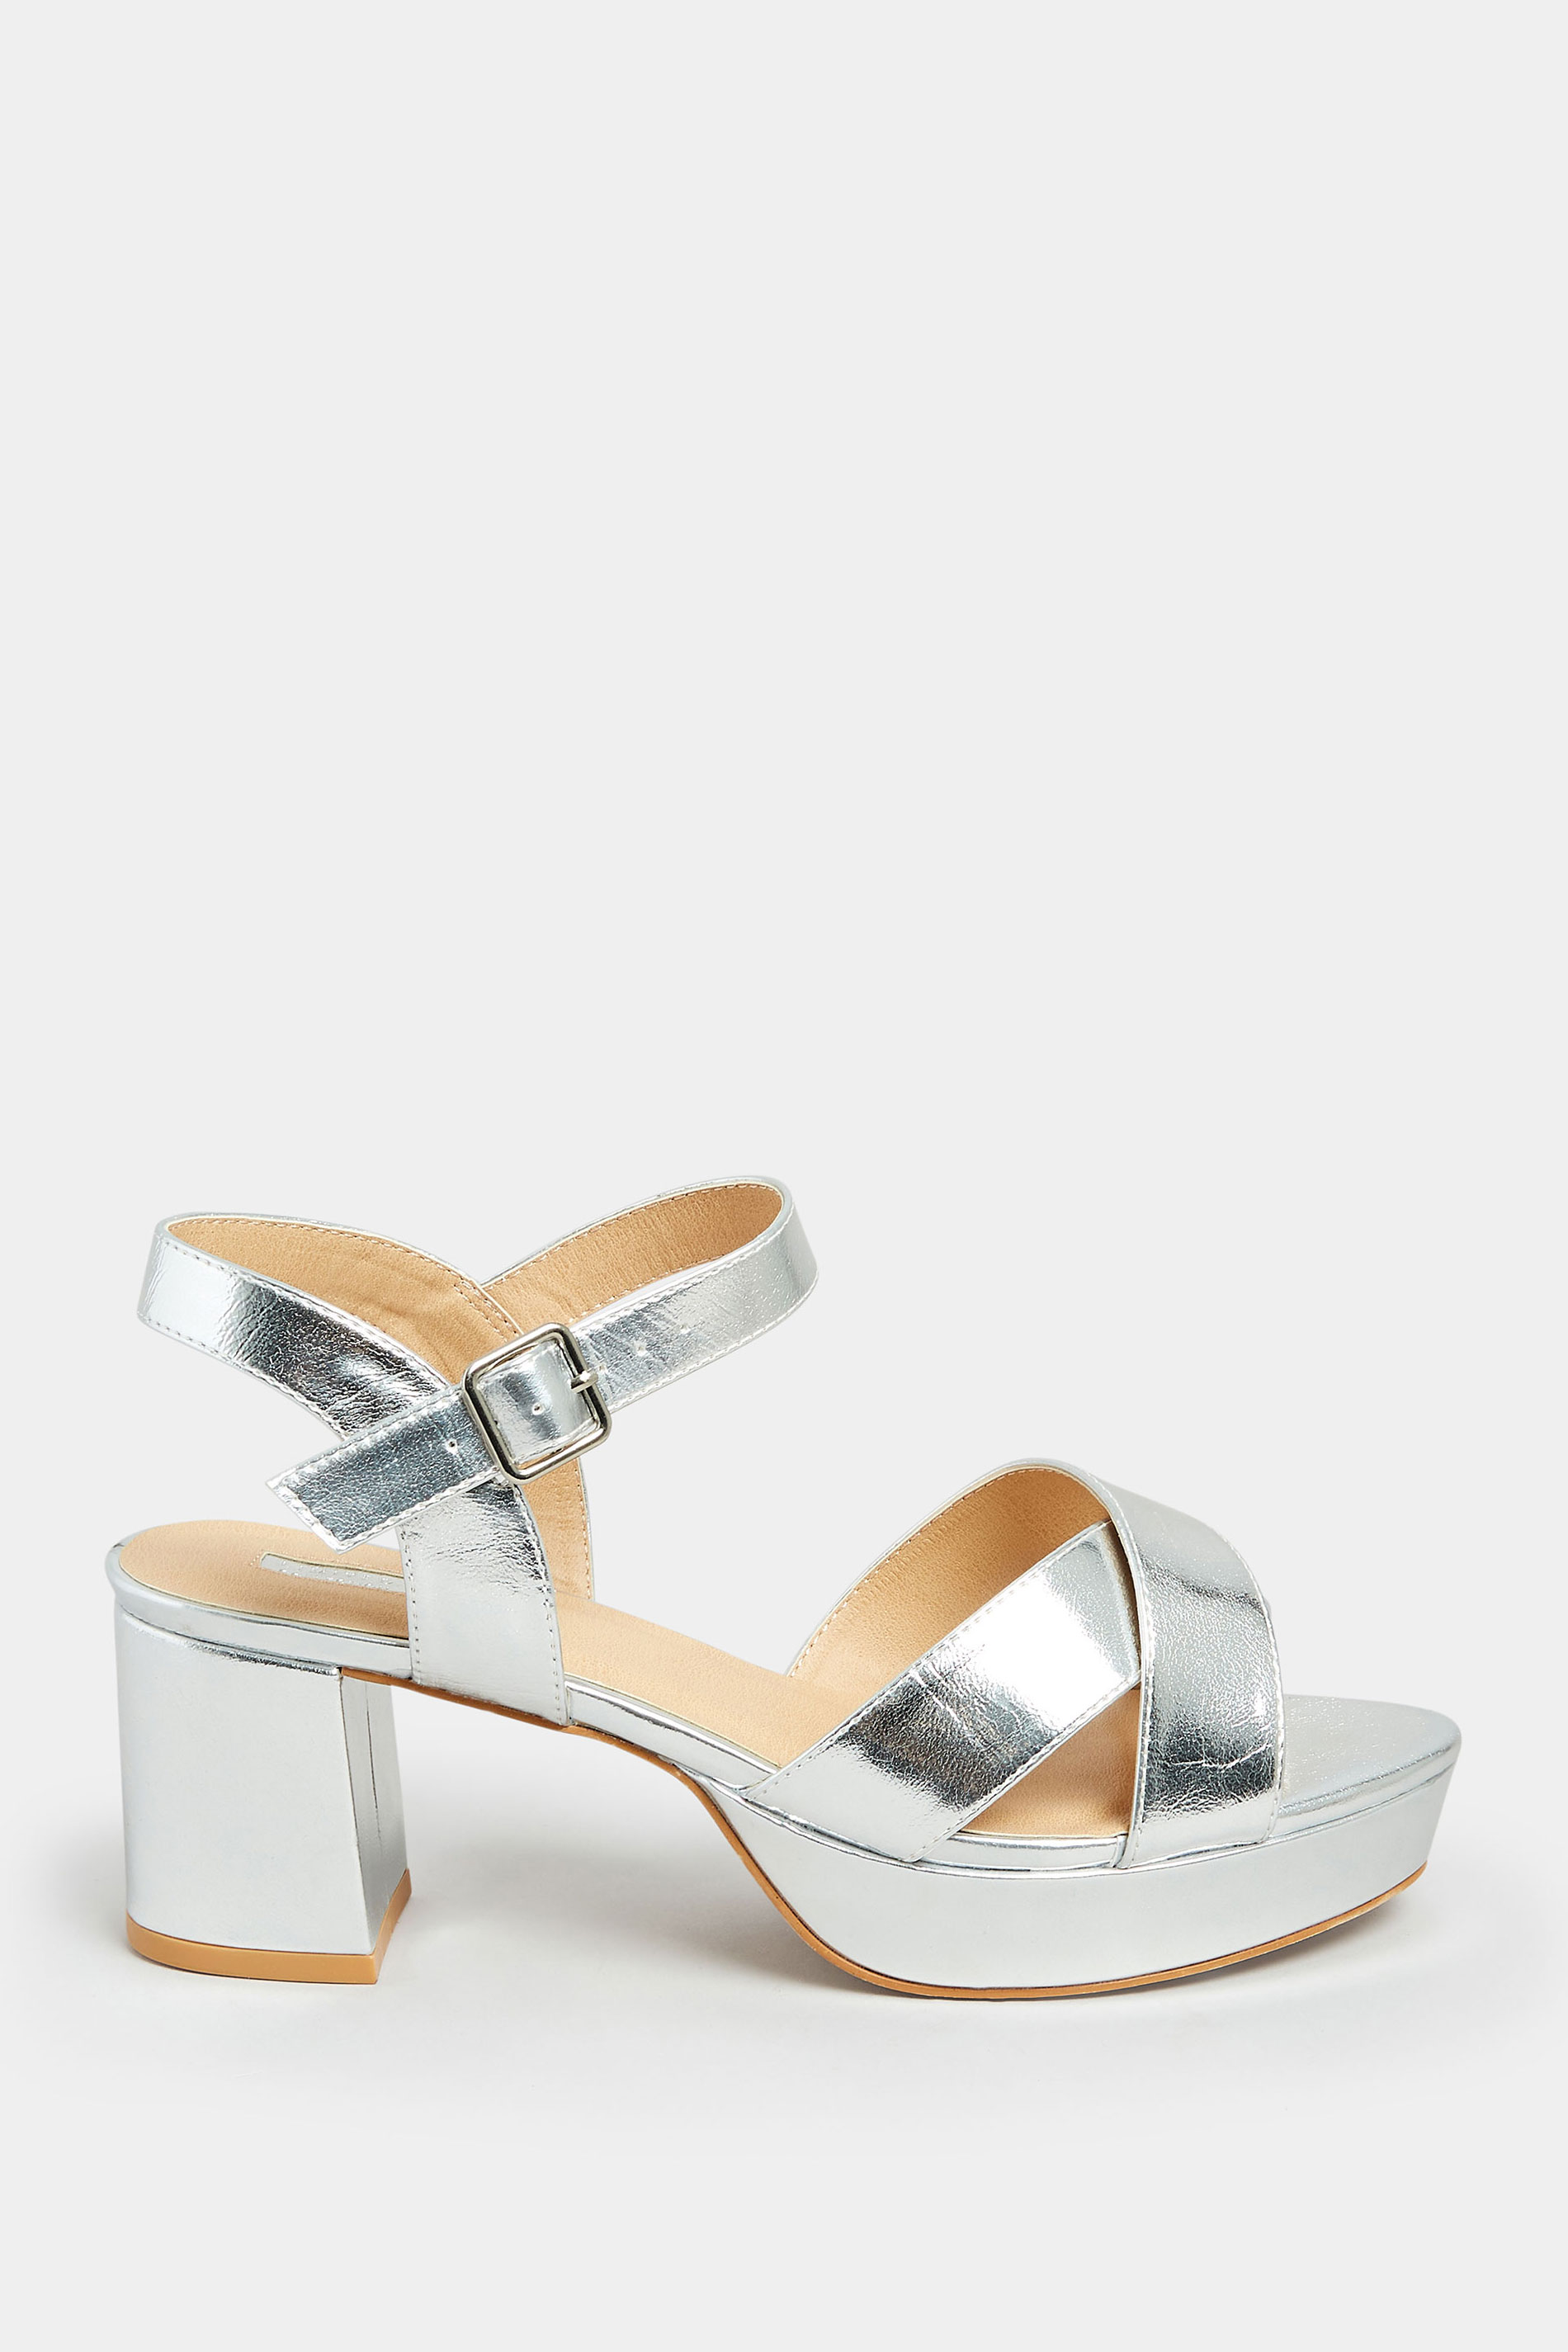 Steve Madden Laudre platform embellished heeled sandal in silver | ASOS |  Embellished heeled sandals, Sandals heels, White sandals heels